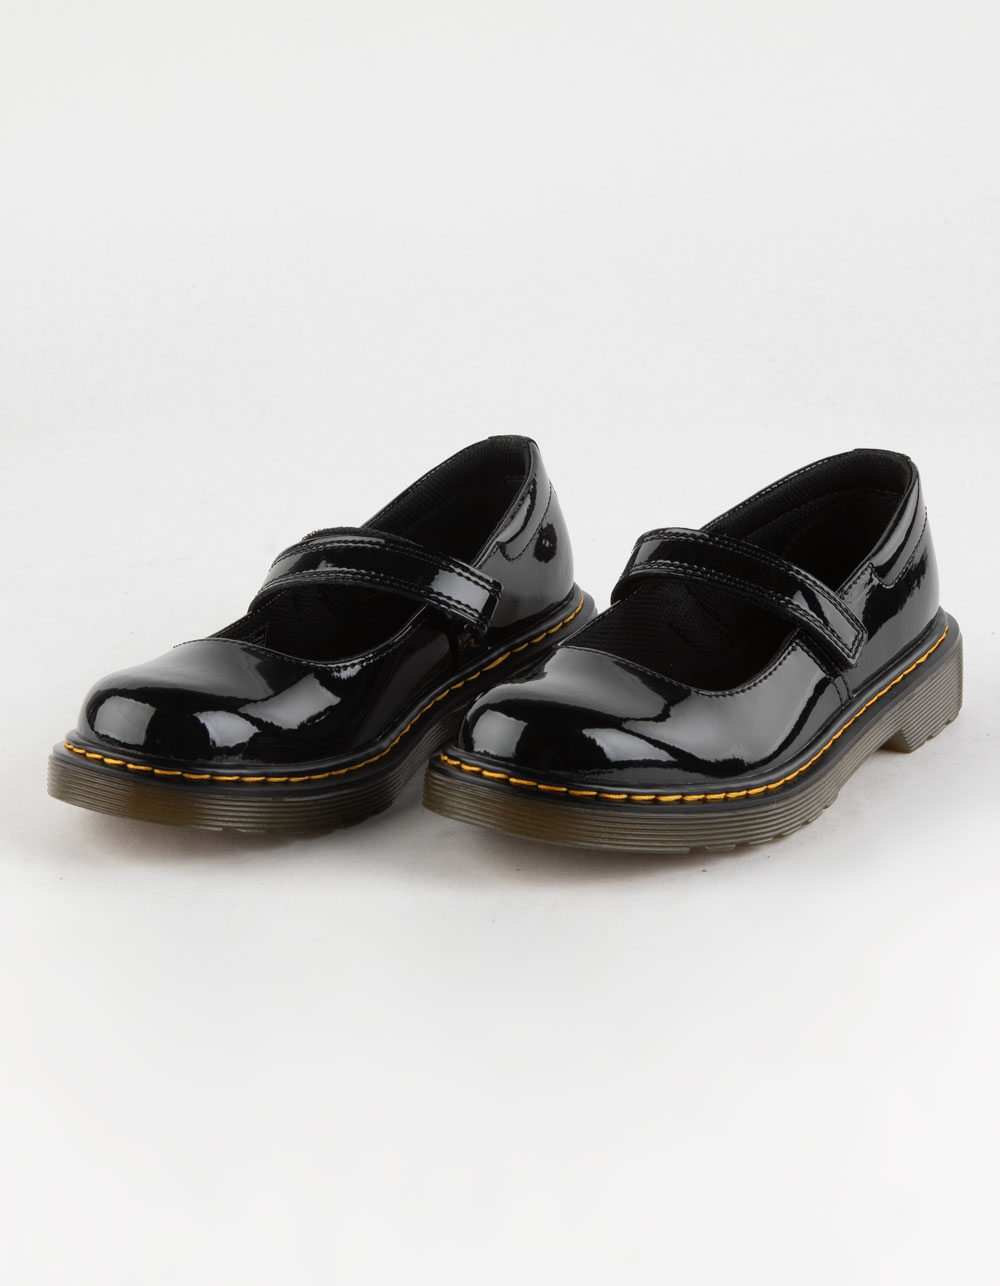 DR. MARTENS Maccy Girls Shoes - BLACK | Tillys